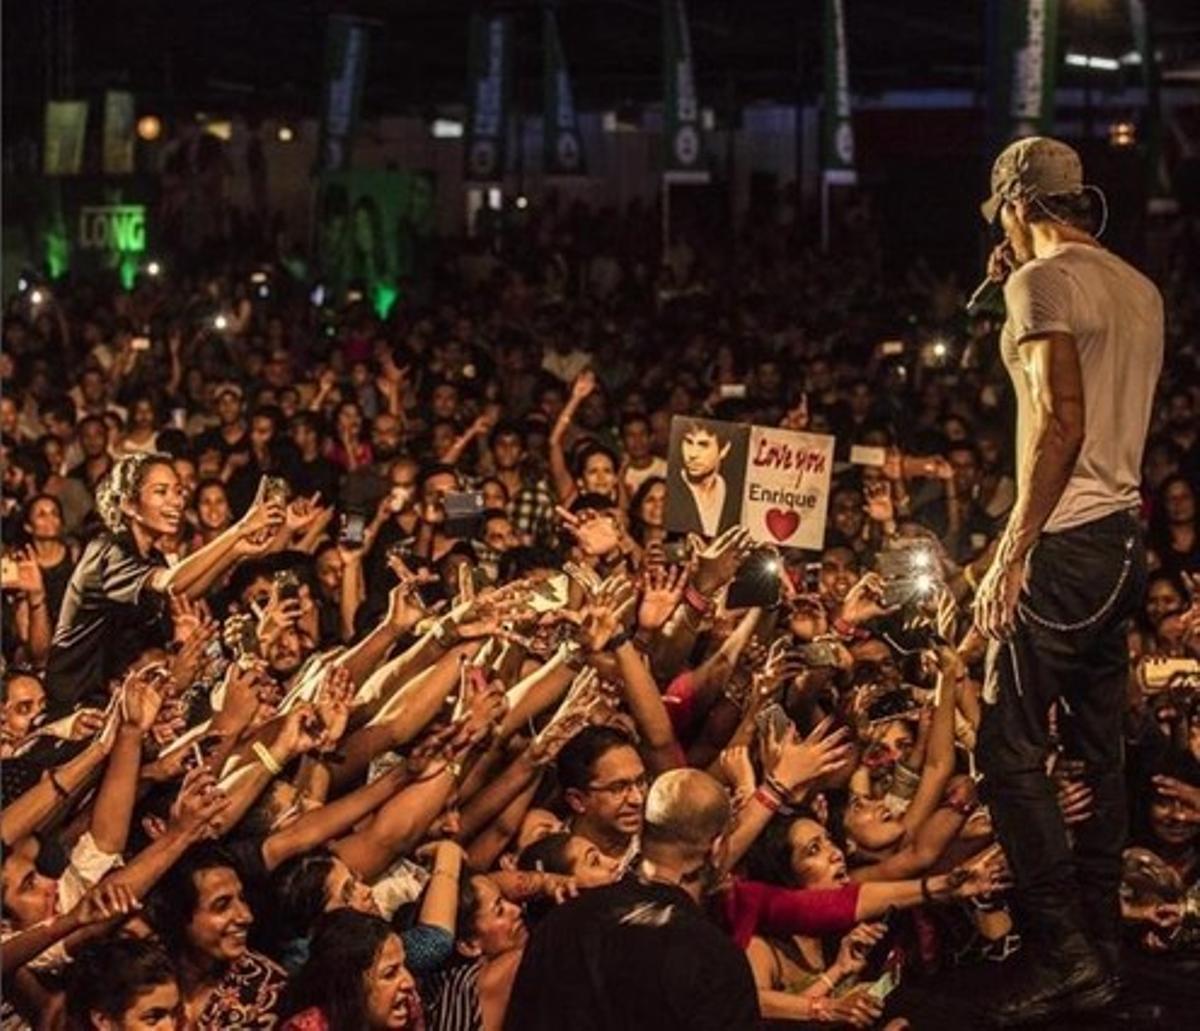 Foto de la cuenta oficial de Instagram de Enrique Iglesias durante el concierto en Colombo, Sri Lanka.